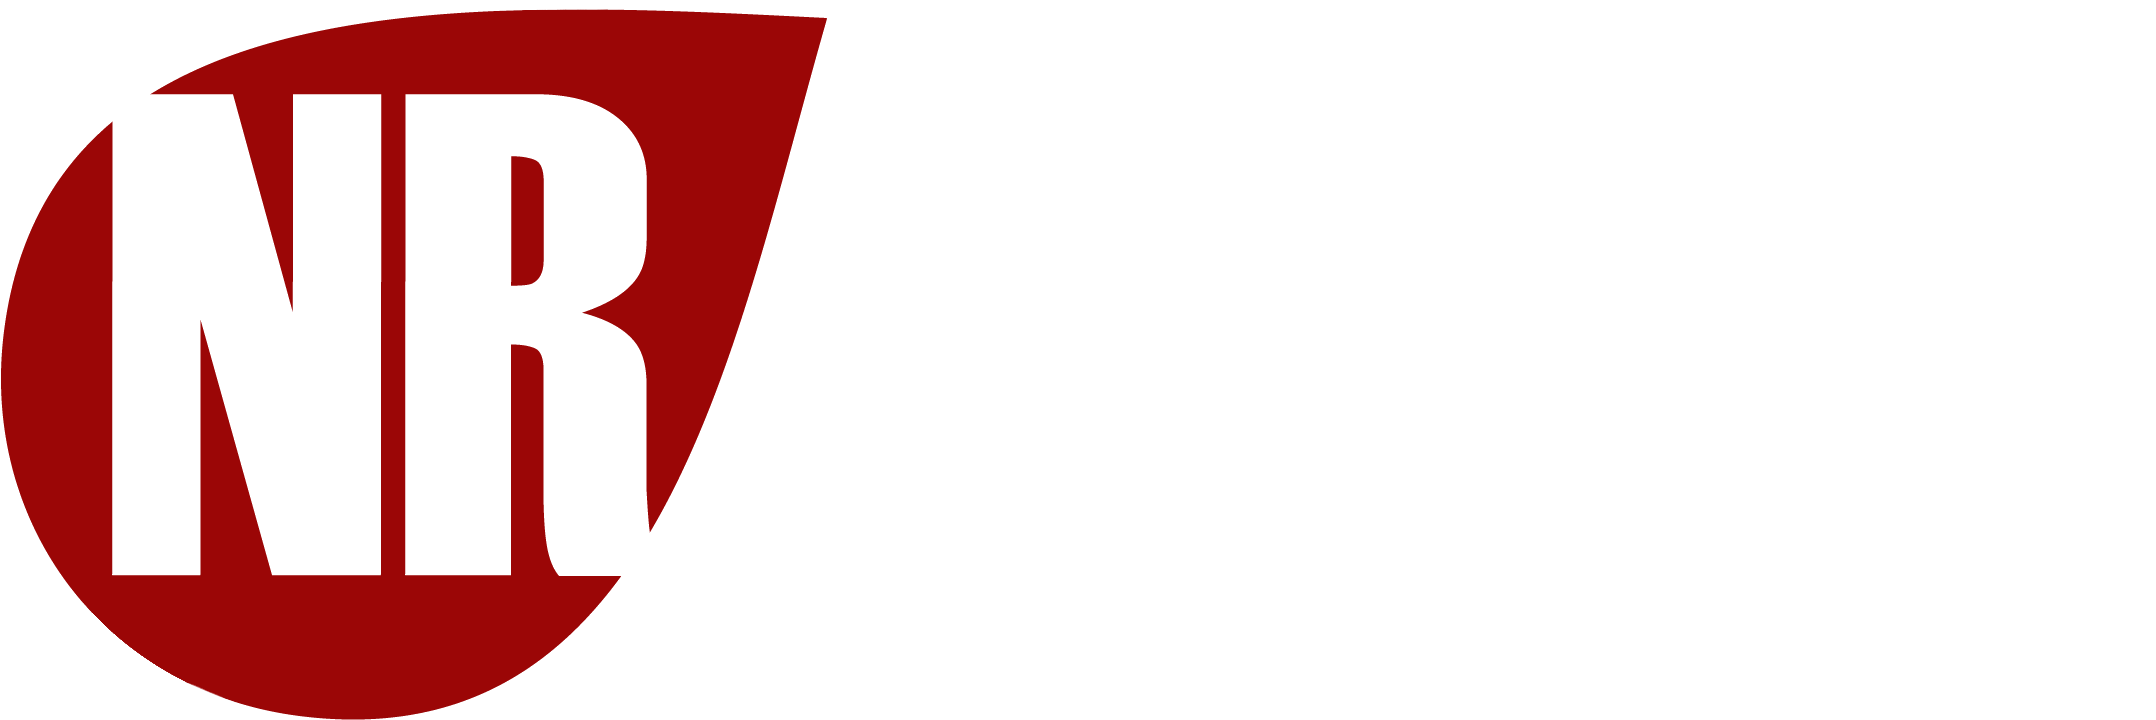 North River Manufacturing North River Manufacturing - River Manufacturing Ltd (2186x764), Png Download